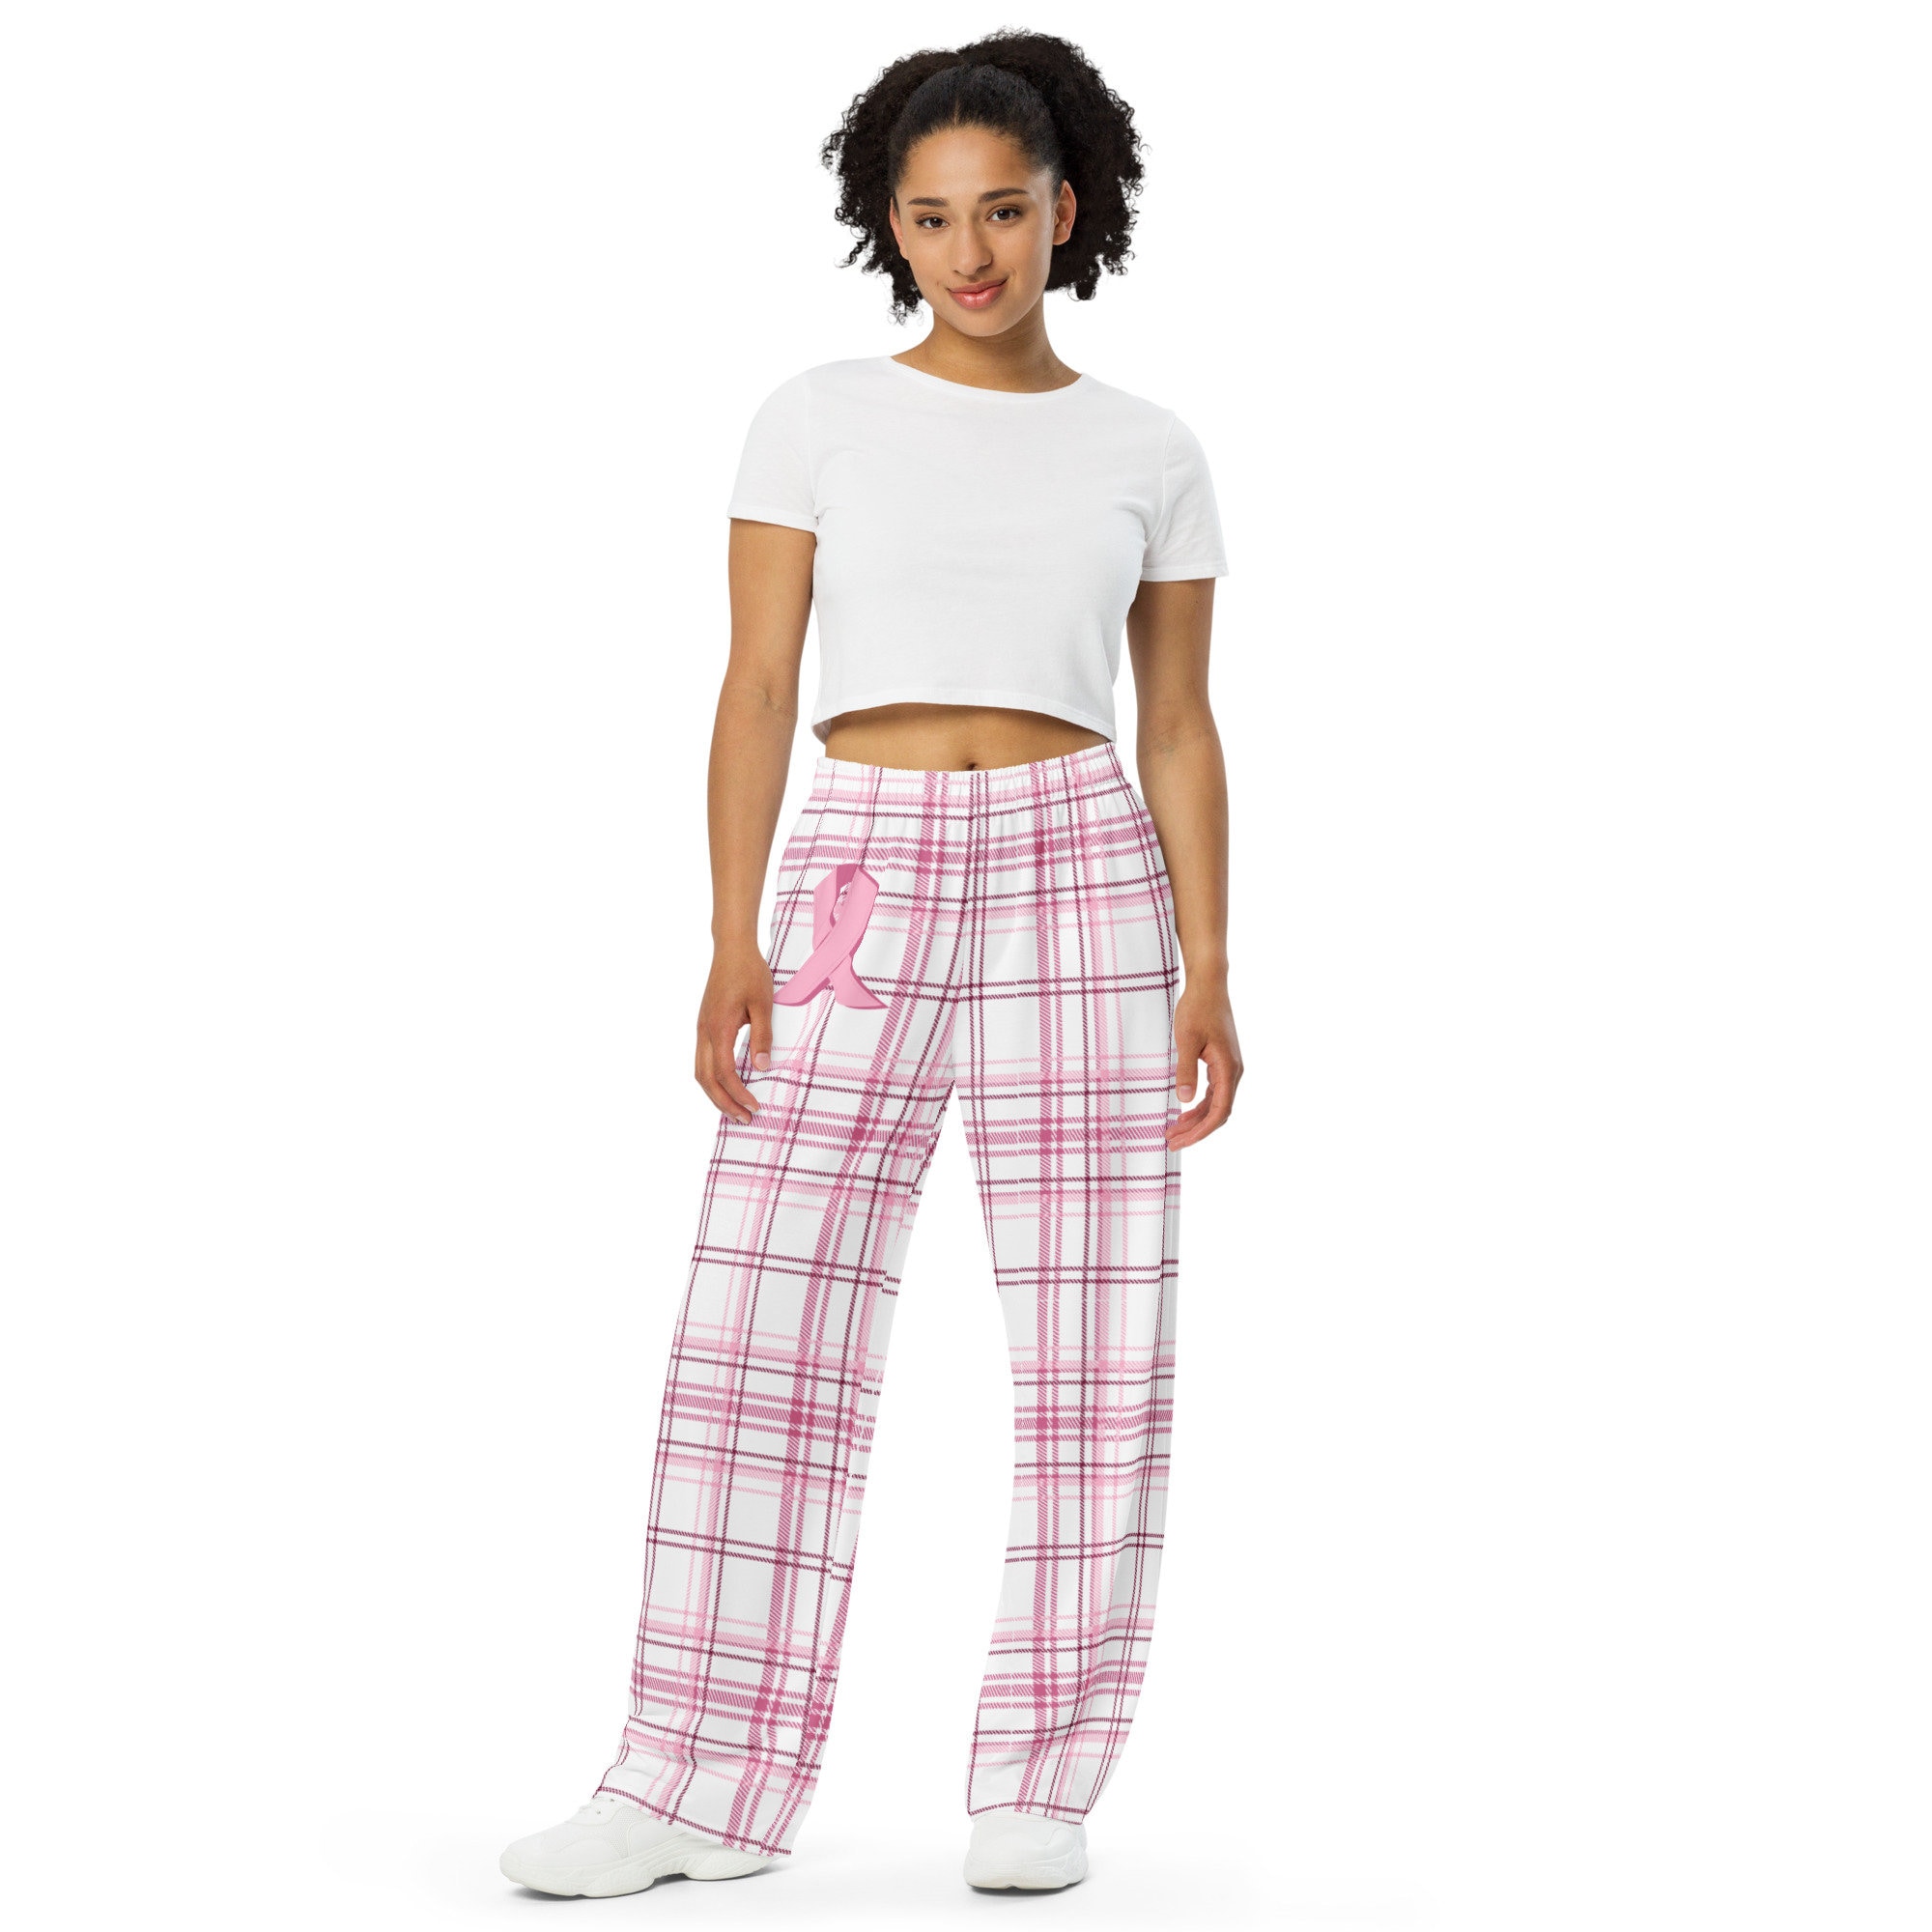 Hawiton Ladies Short Plaid Bottoms Check Pattern Loungewear Sleepwear Pajamas Pants for Women 